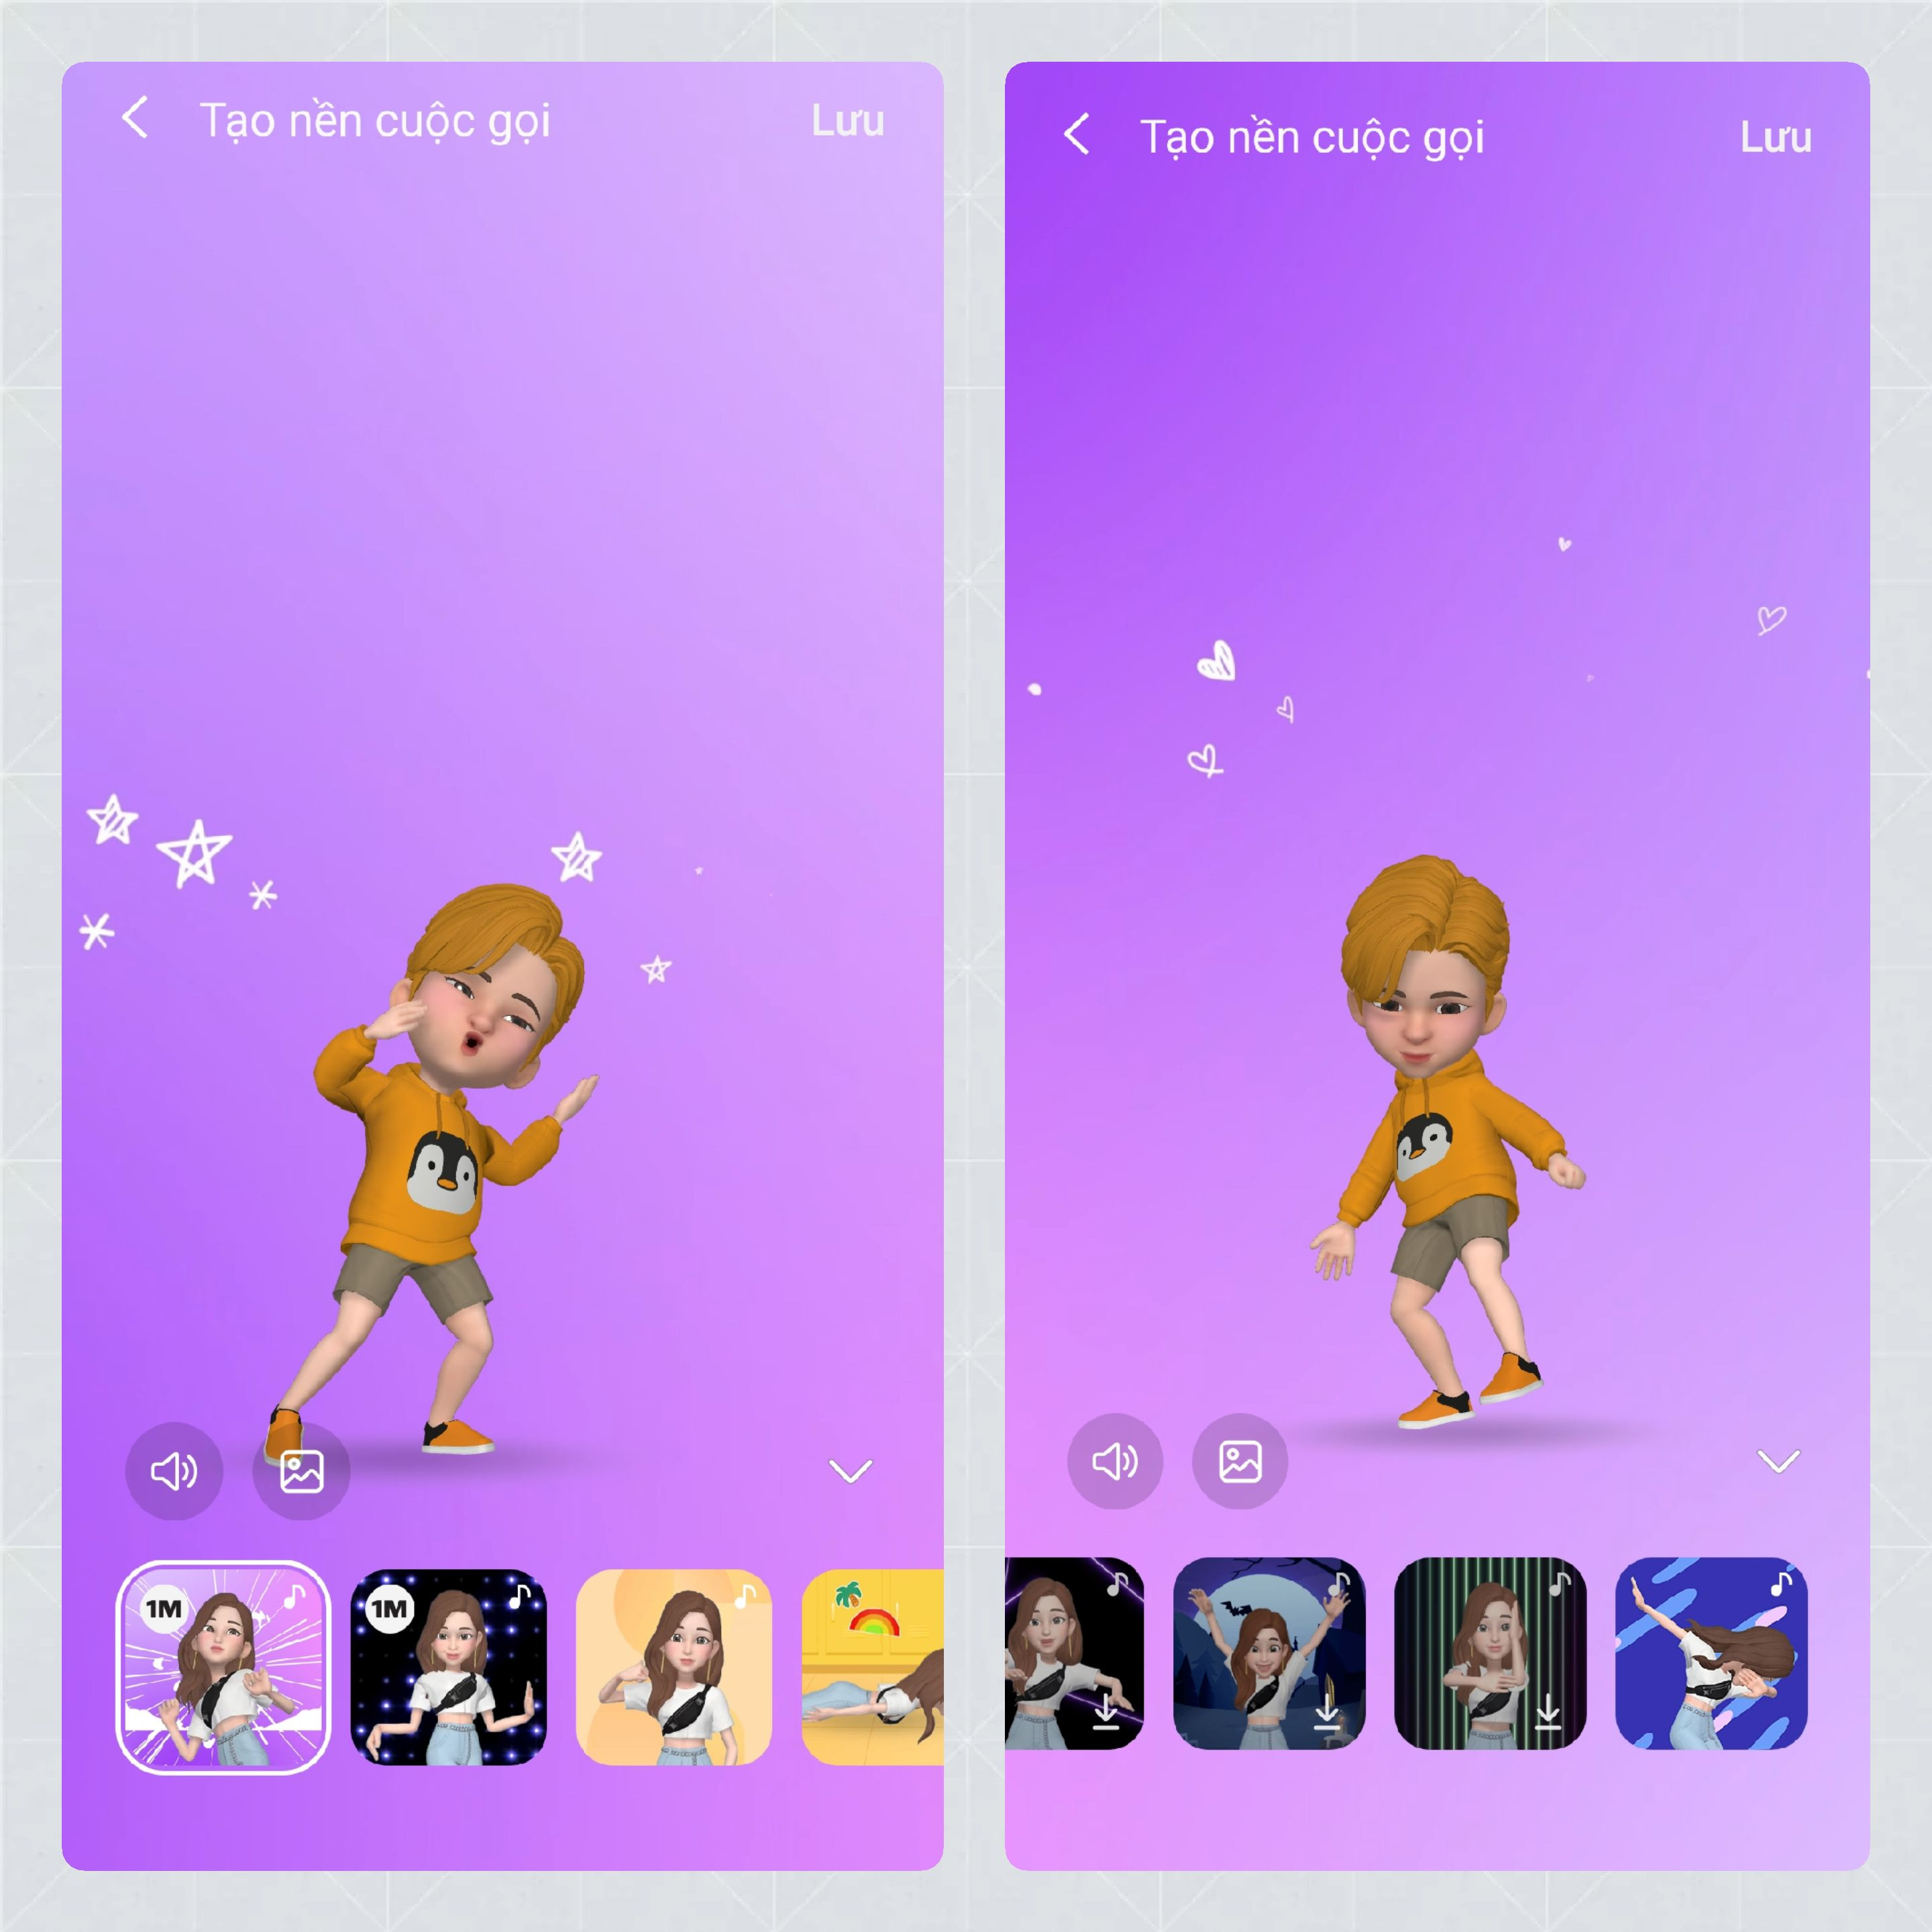 Hướng dẫn tạo nền cuộc gọi bằng AR Emoji - Samfanscom